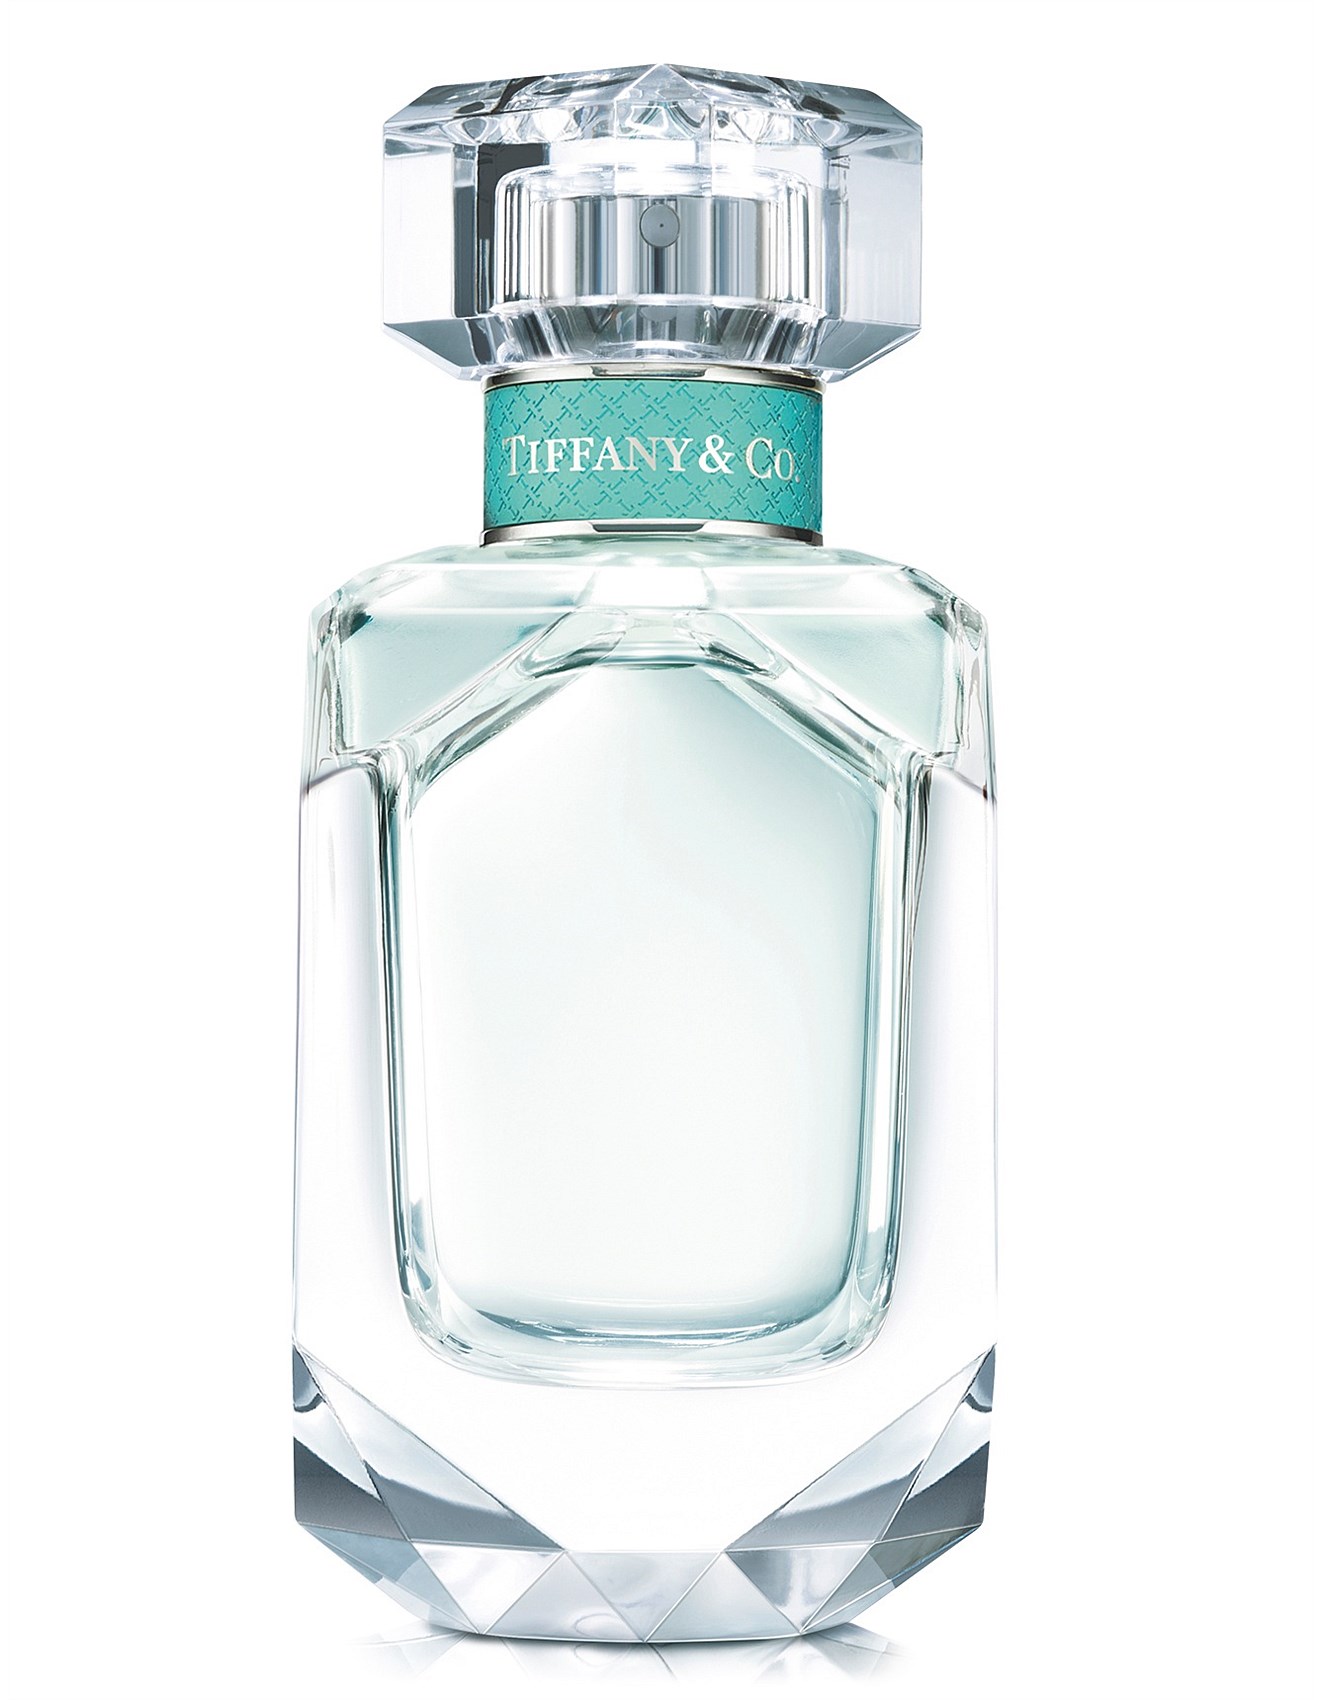 Tiffany and Co perfume